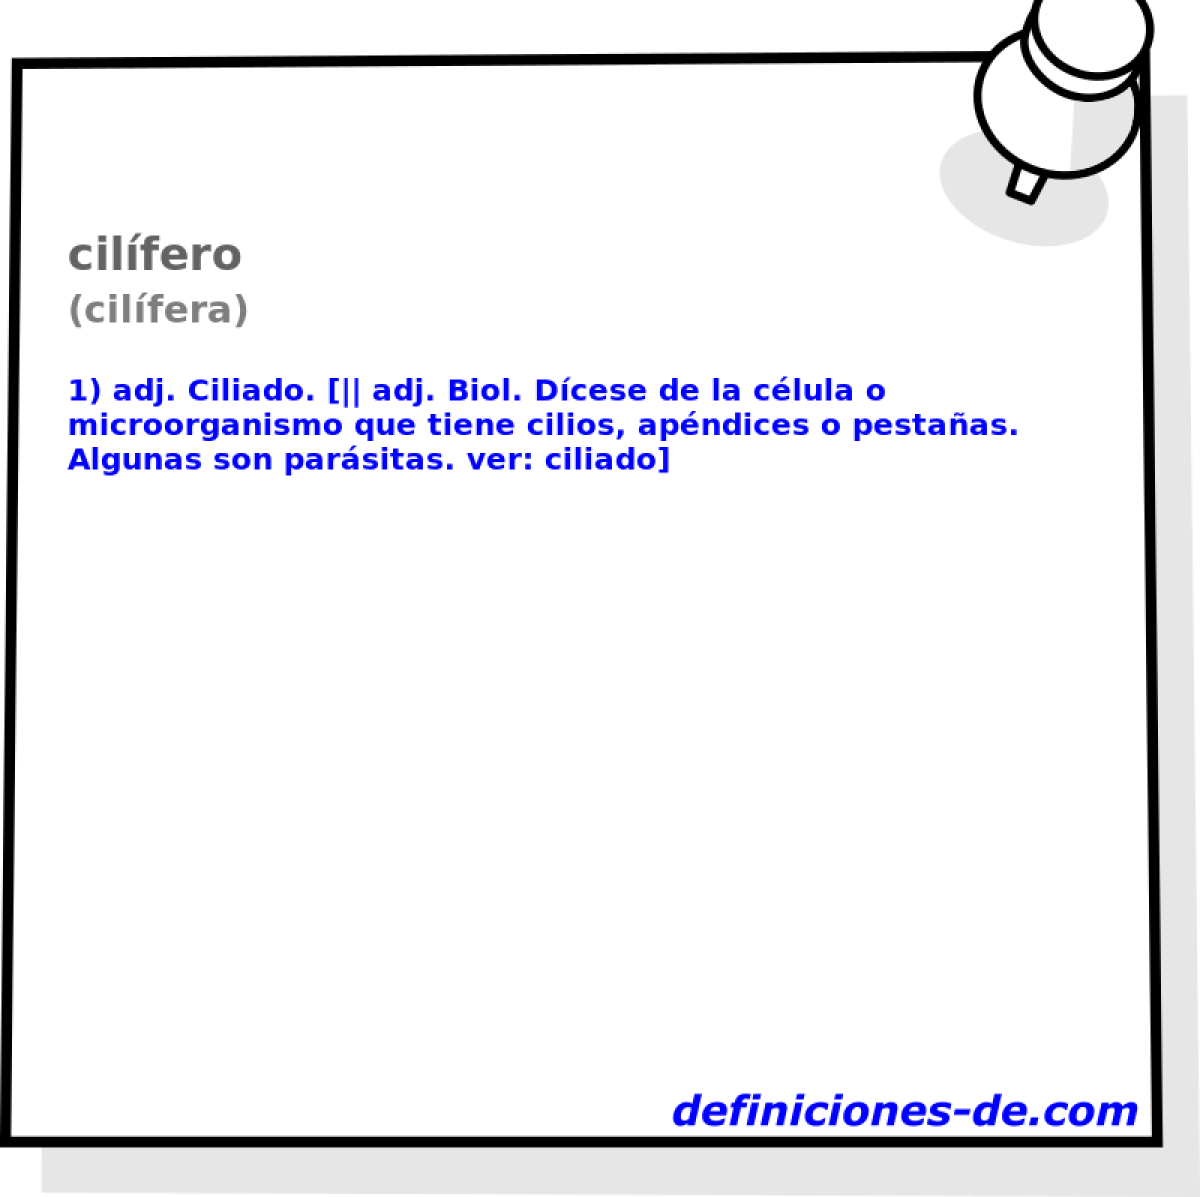 cilfero (cilfera)